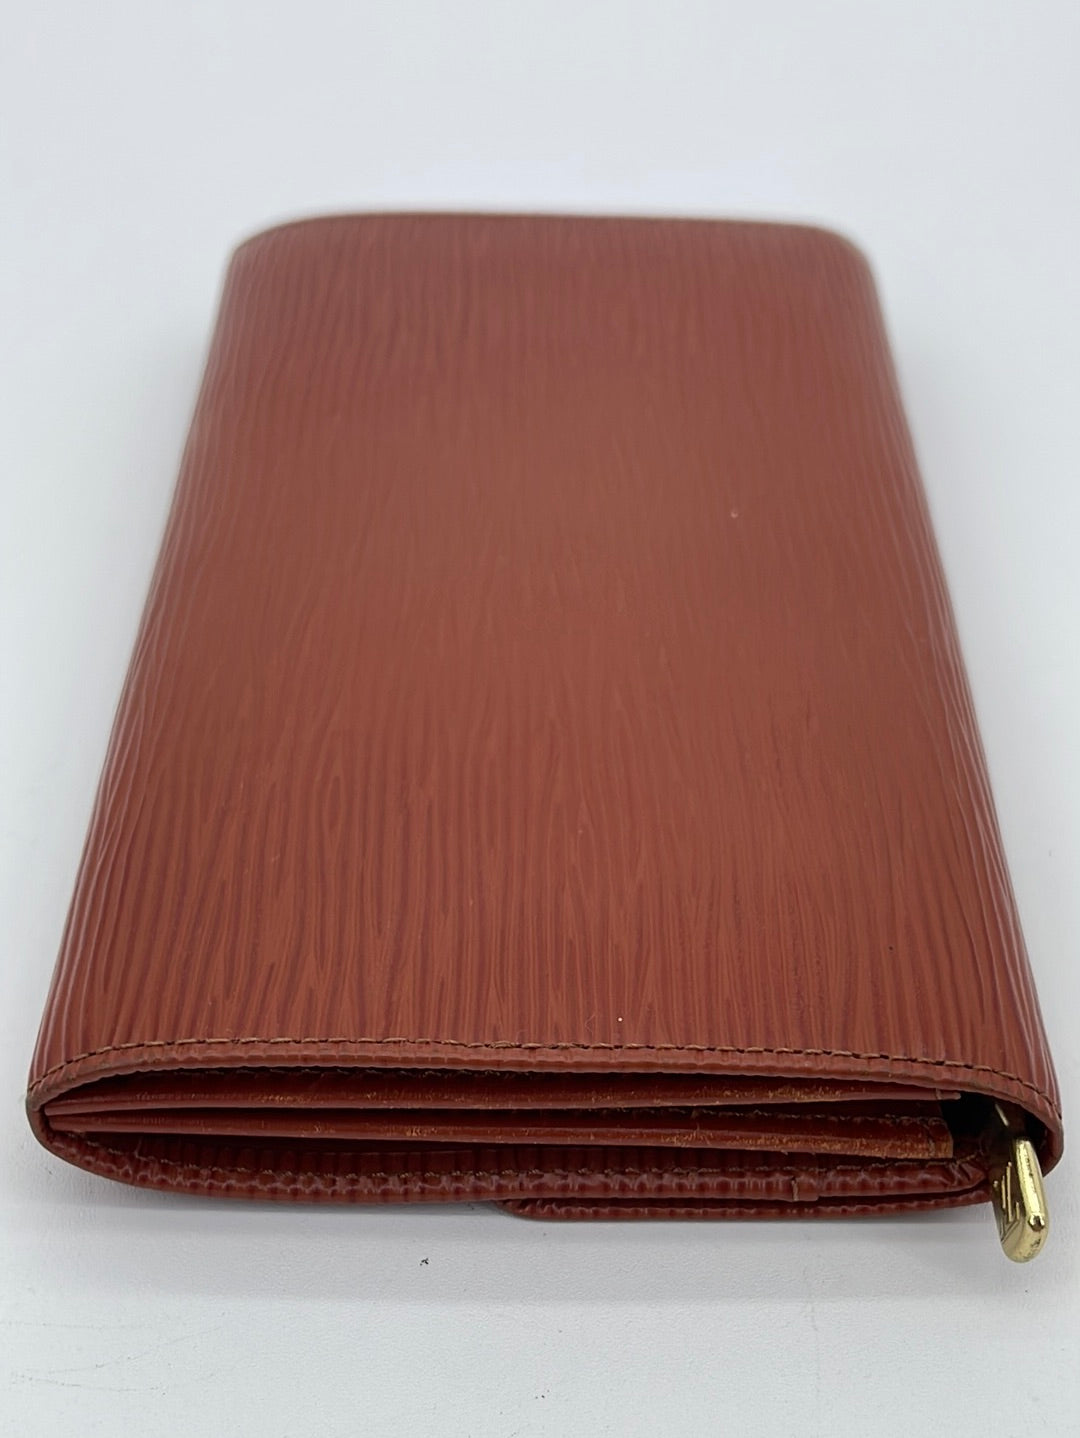 Louis Vuitton Smart Wallet Epi Leather Case